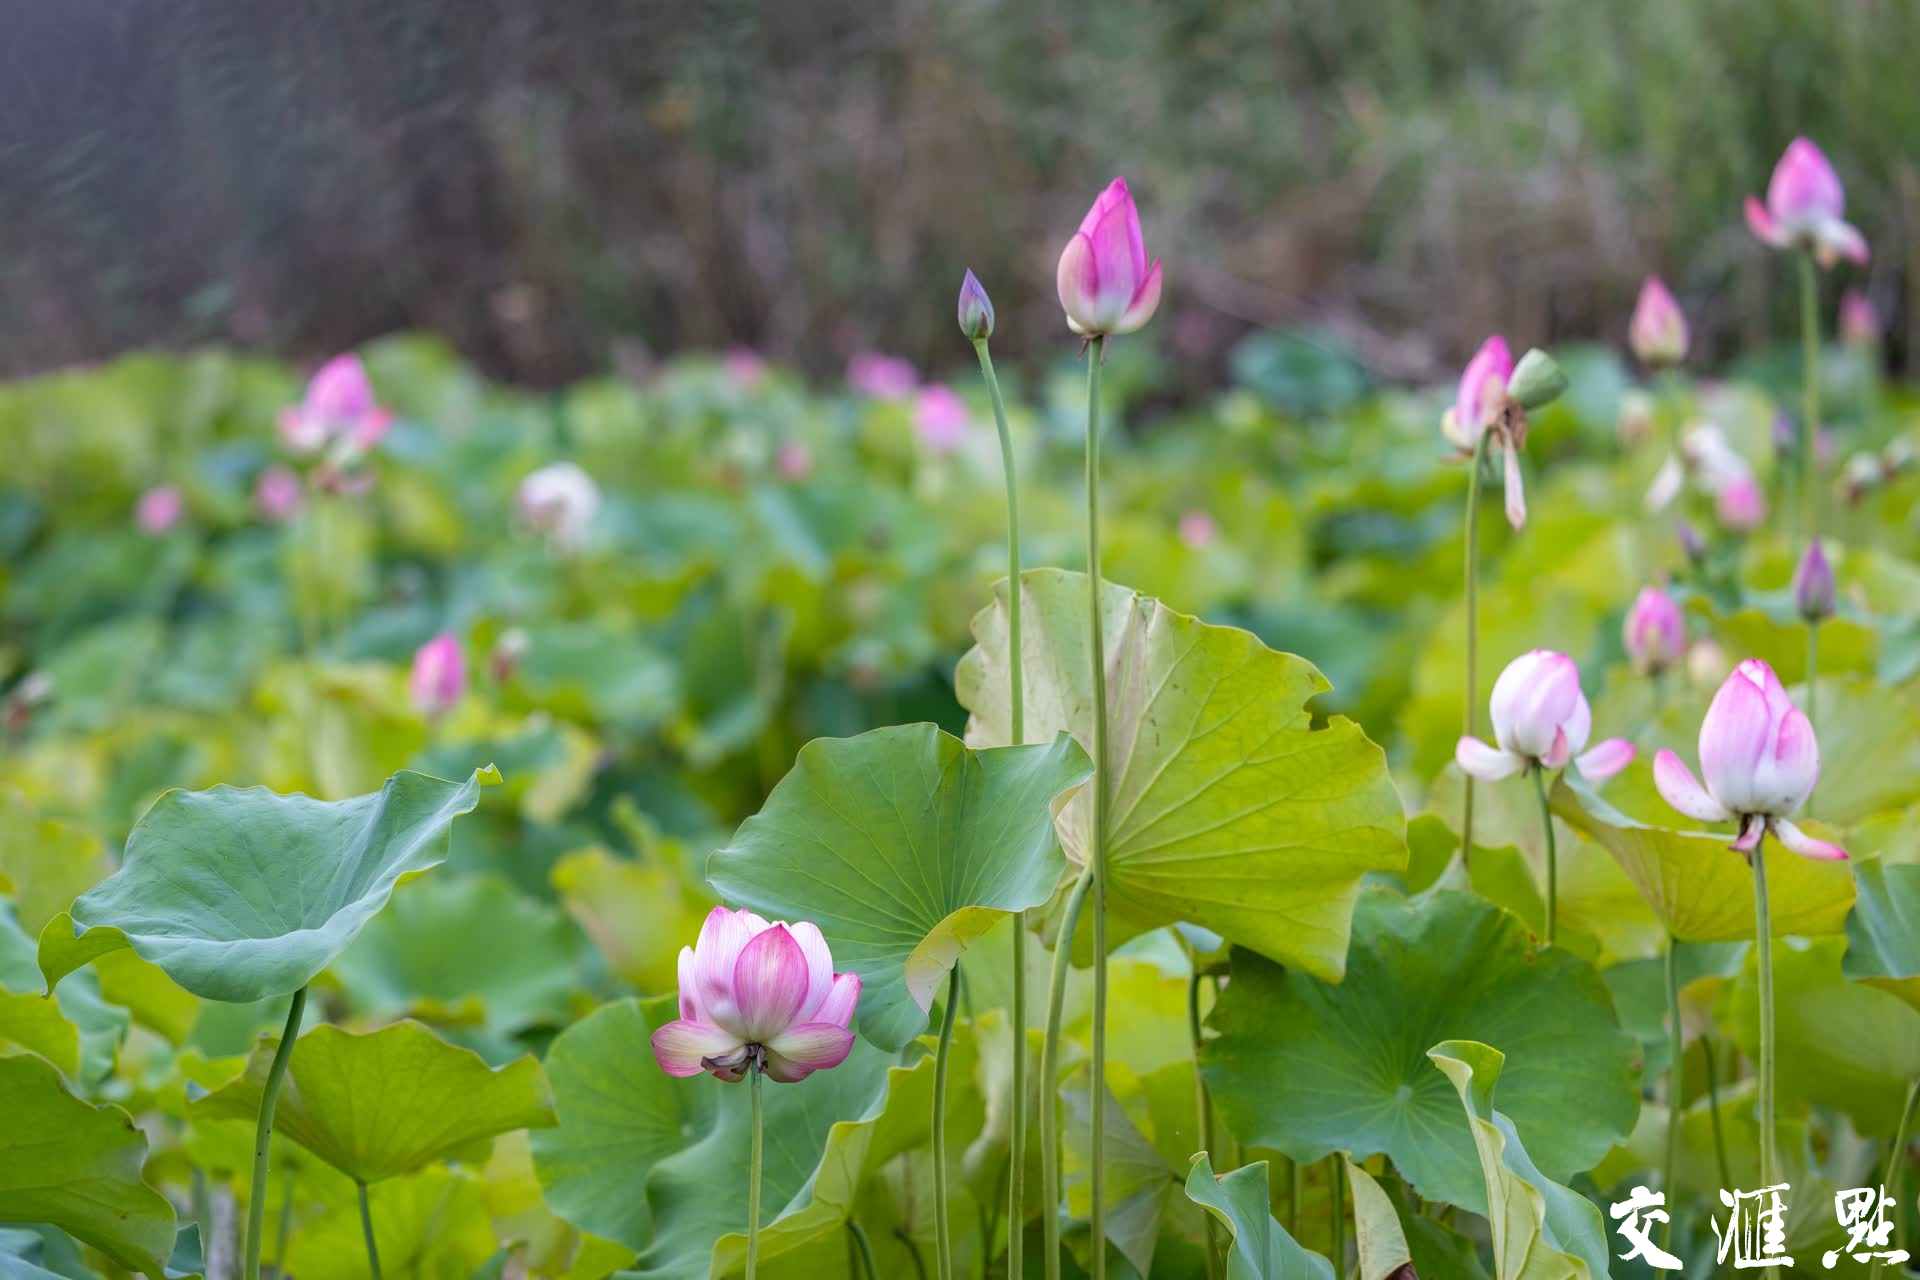  Nanjing, Jiangsu: Lotus in full bloom makes painting beautiful